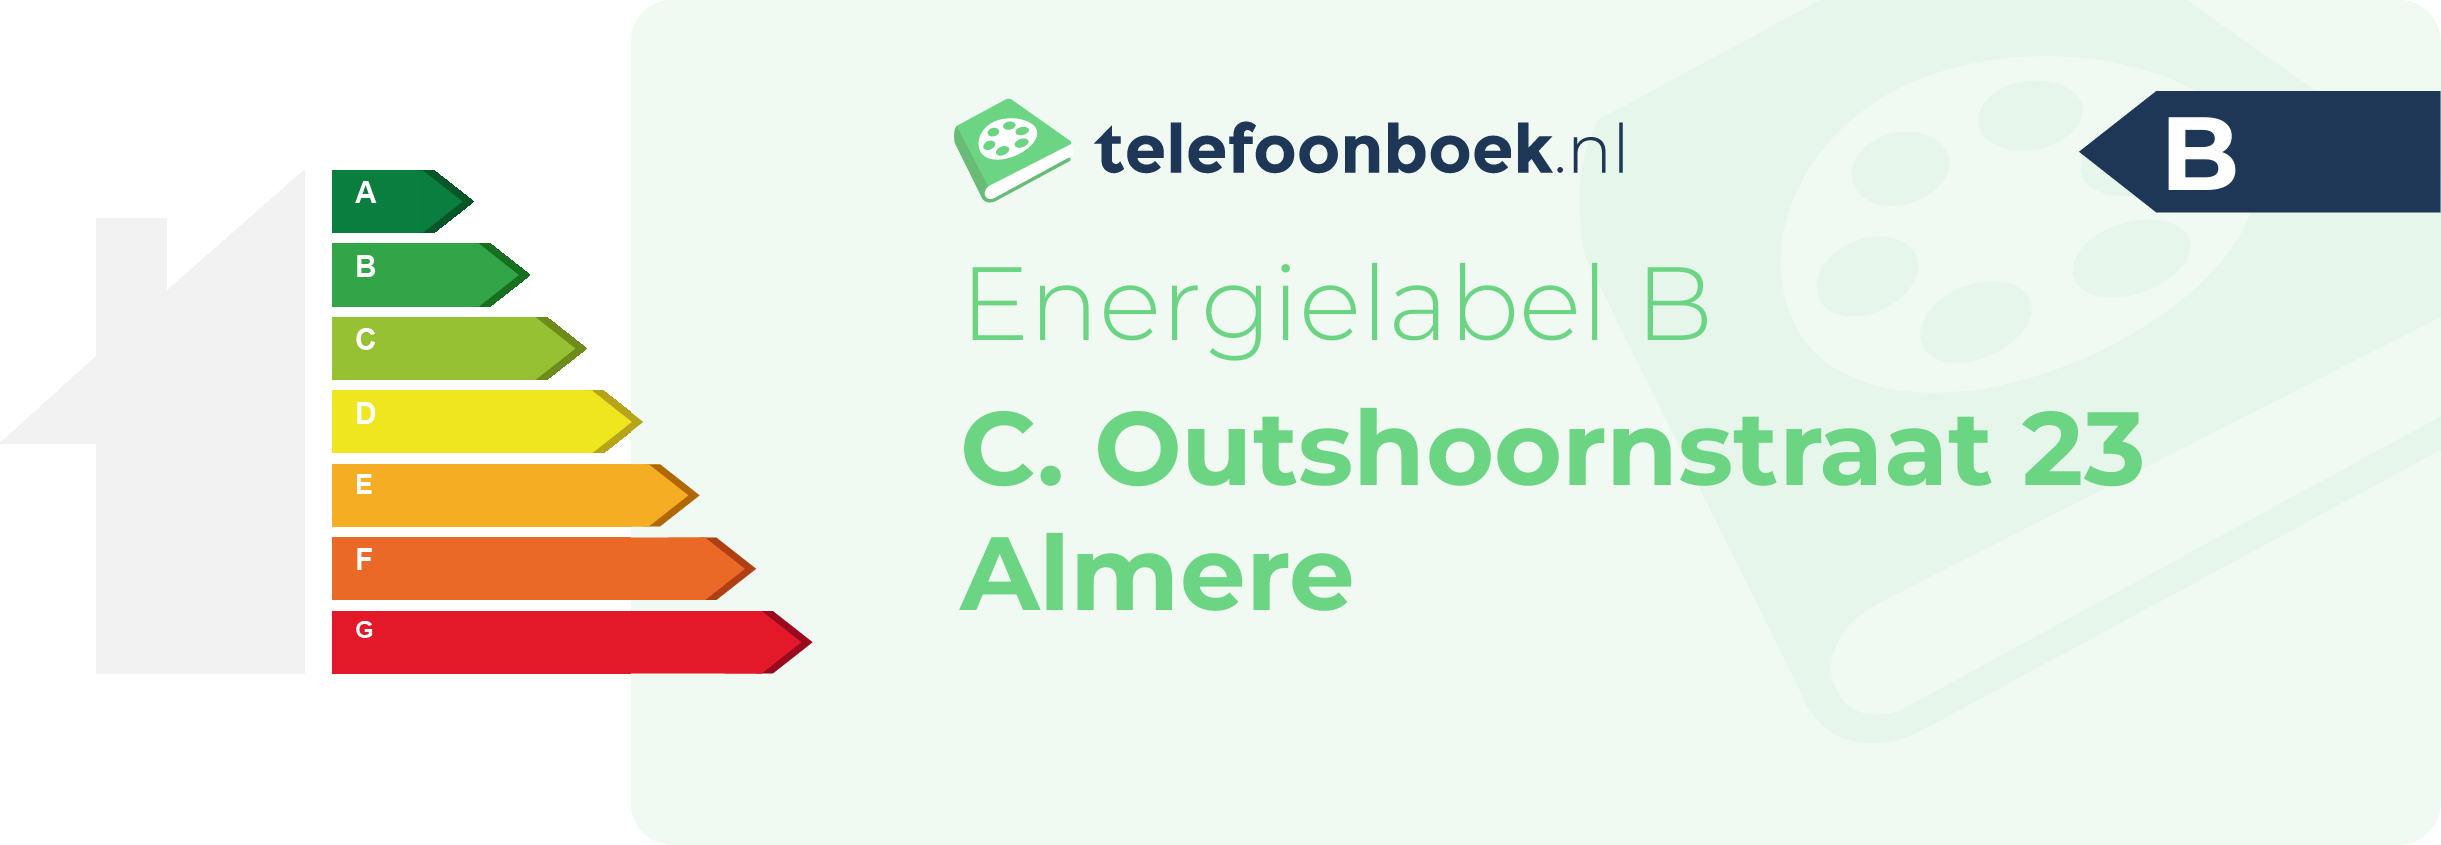 Energielabel C. Outshoornstraat 23 Almere